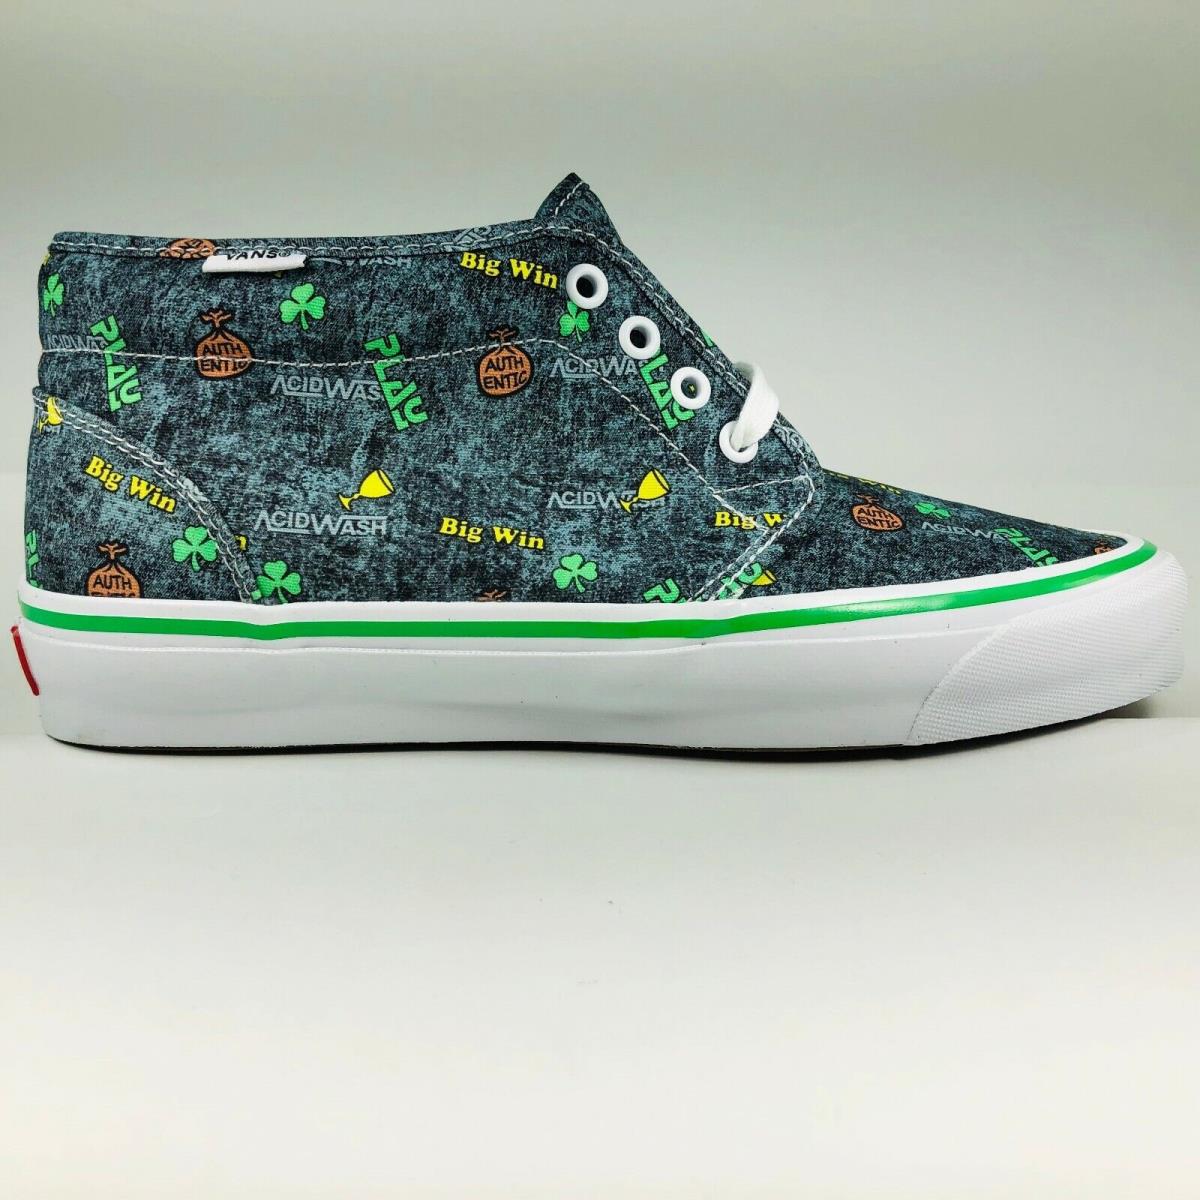 Vans OG Chukka LX Fergadelic Multicolor Acid Wash Skateboard Shoes Mens Size 8